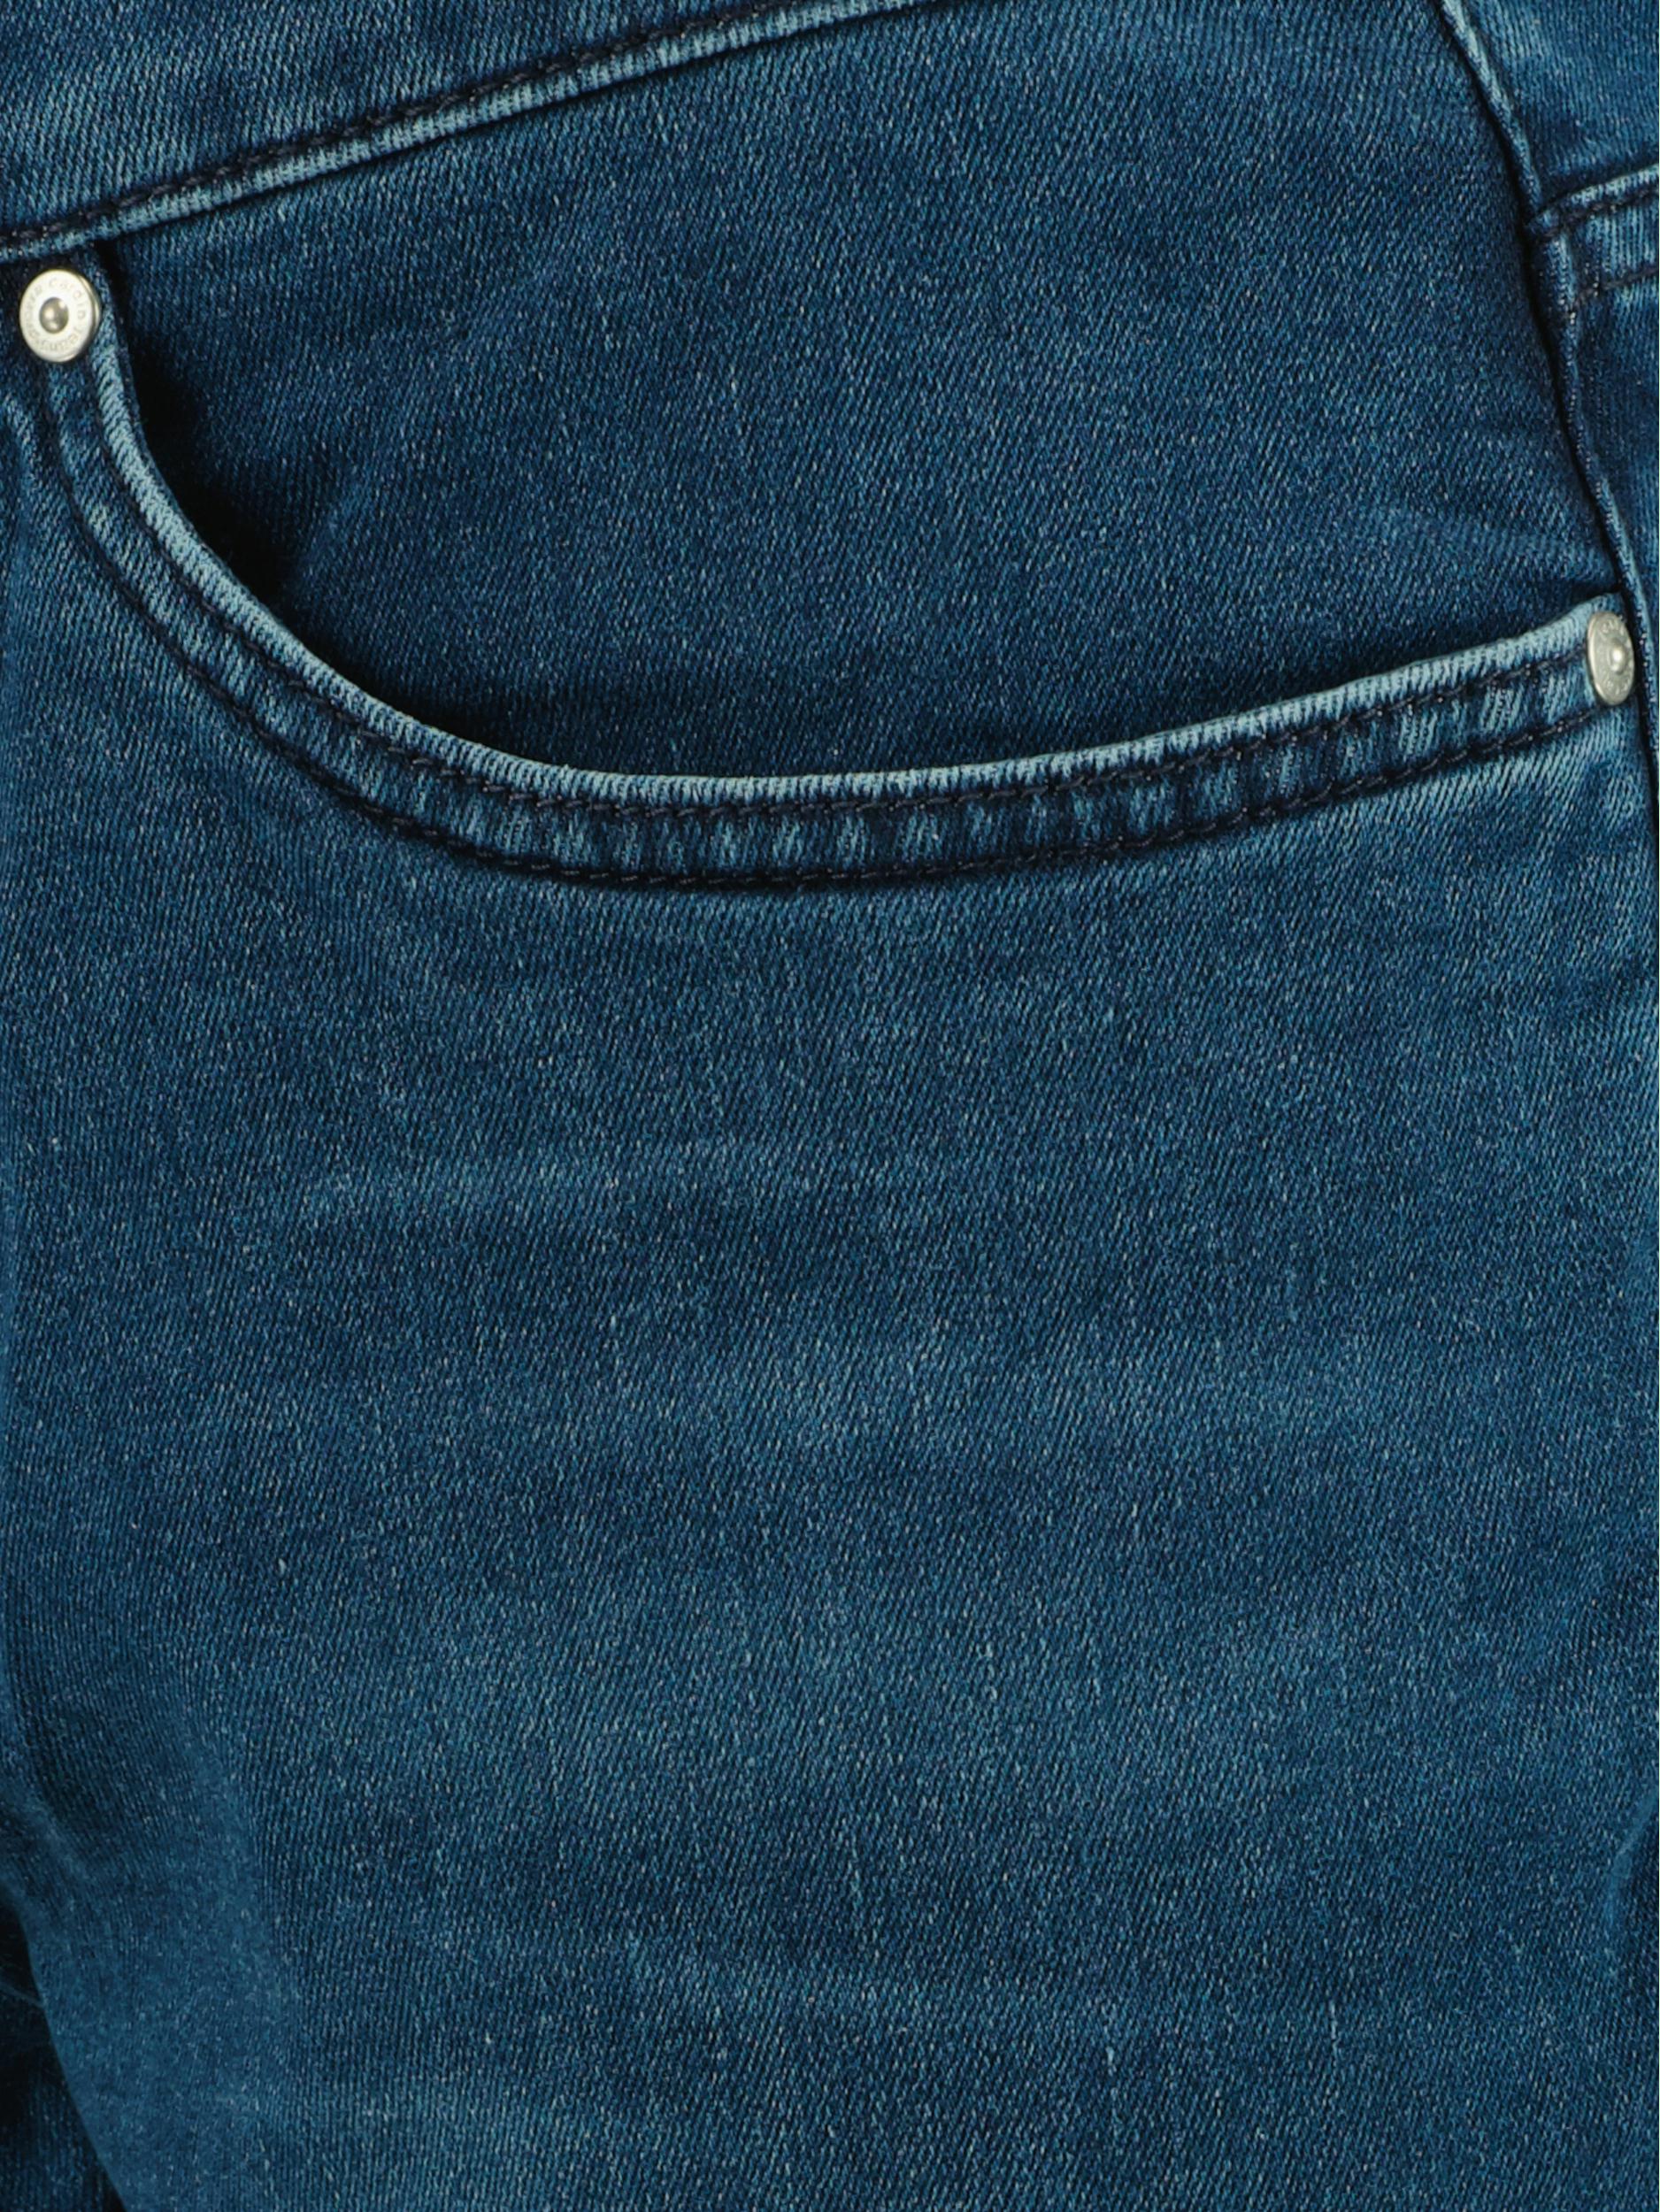 Pierre Cardin 5-Pocket Jeans Blauw  C7 30030.7715/6844